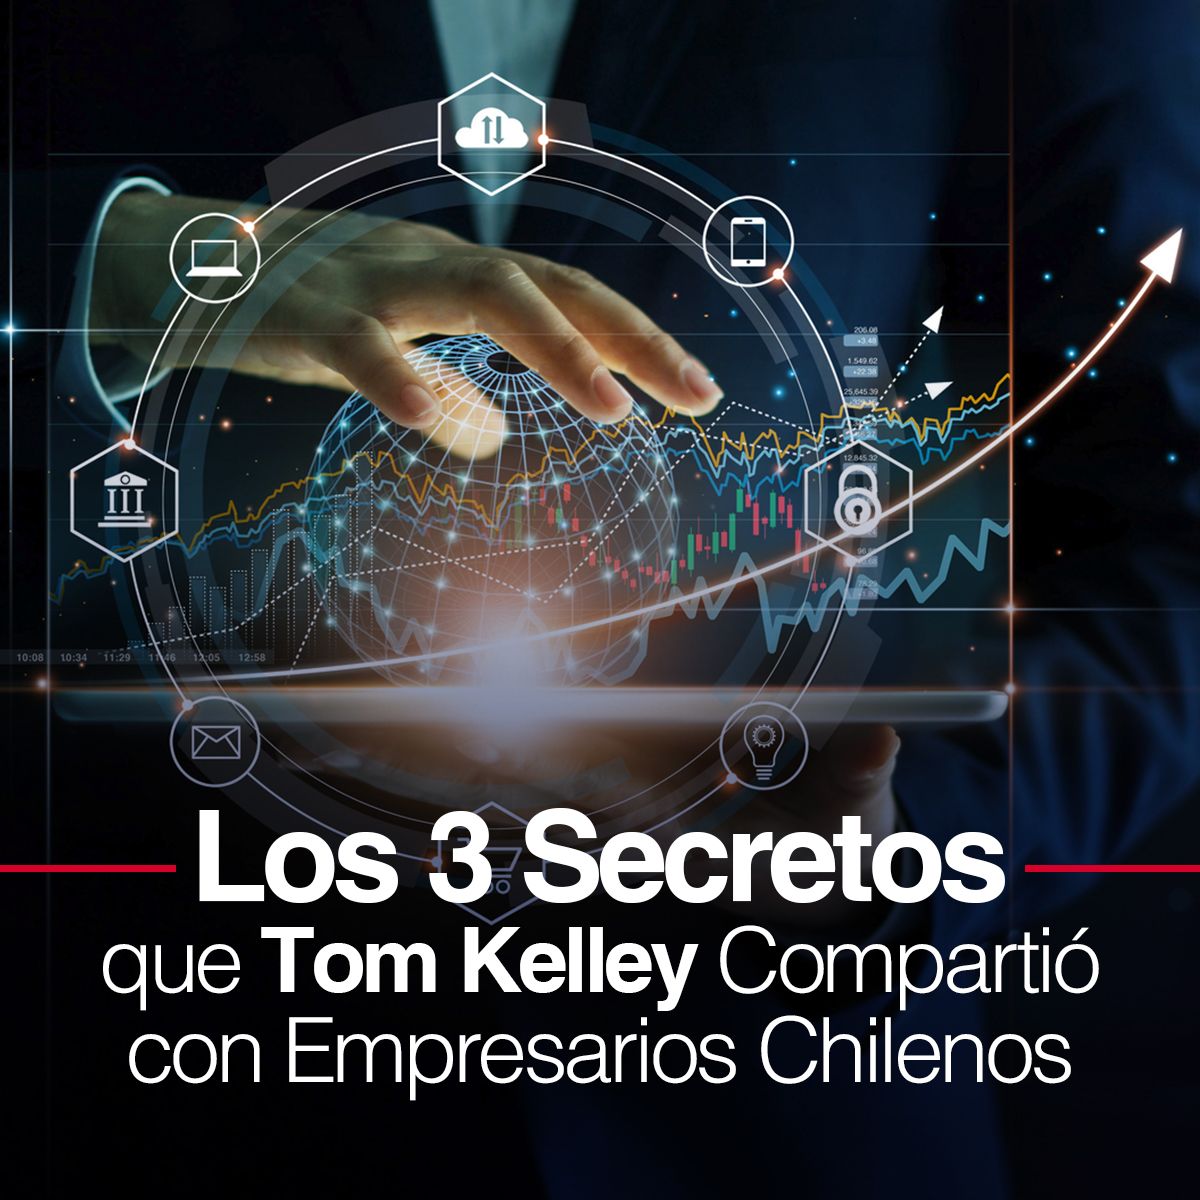 Los 3 Secretos que Tom Kelley Compartió con Empresarios Chilenos